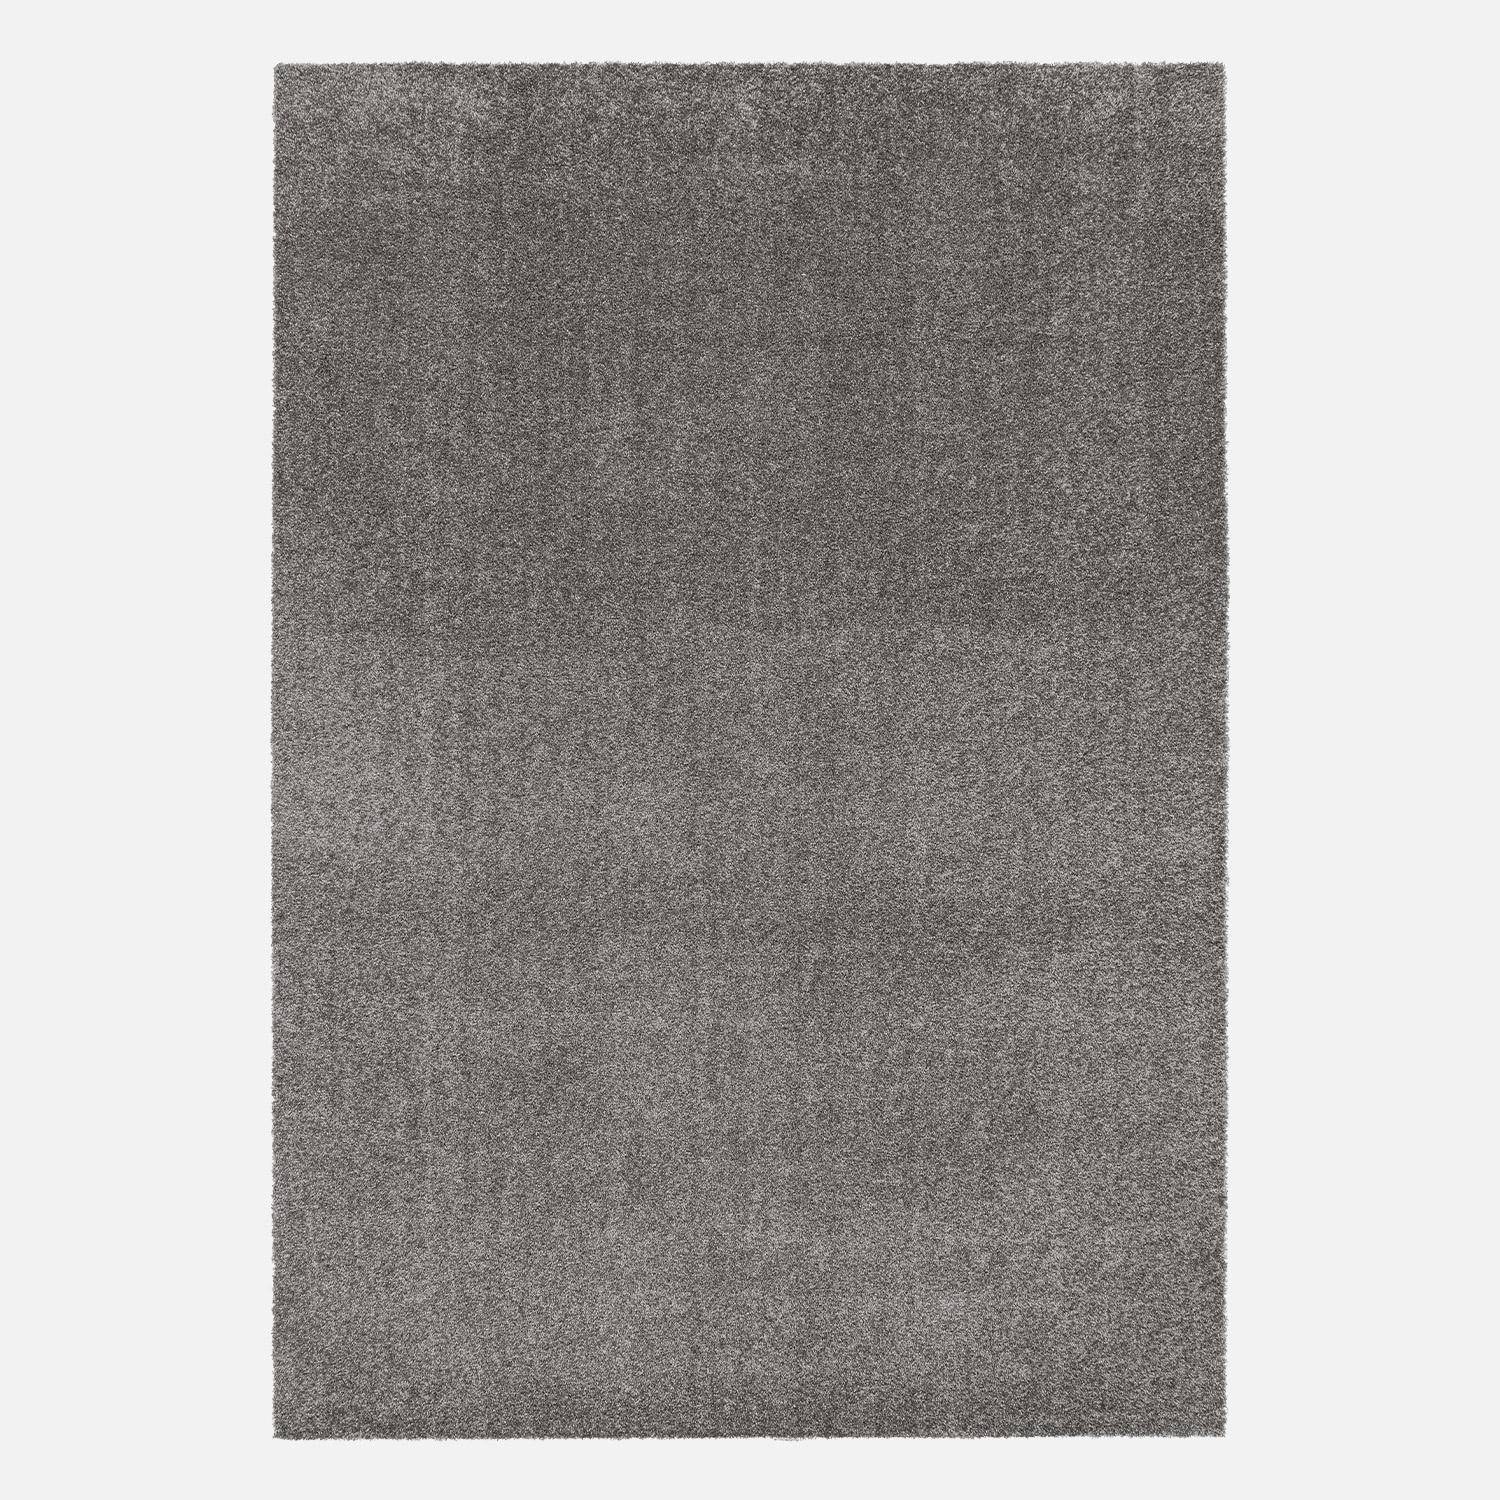 Tappeto per interni in velluto riccio grigio antracite, 120x170cm, a pelo corto con effetto pelo ad anello Photo4